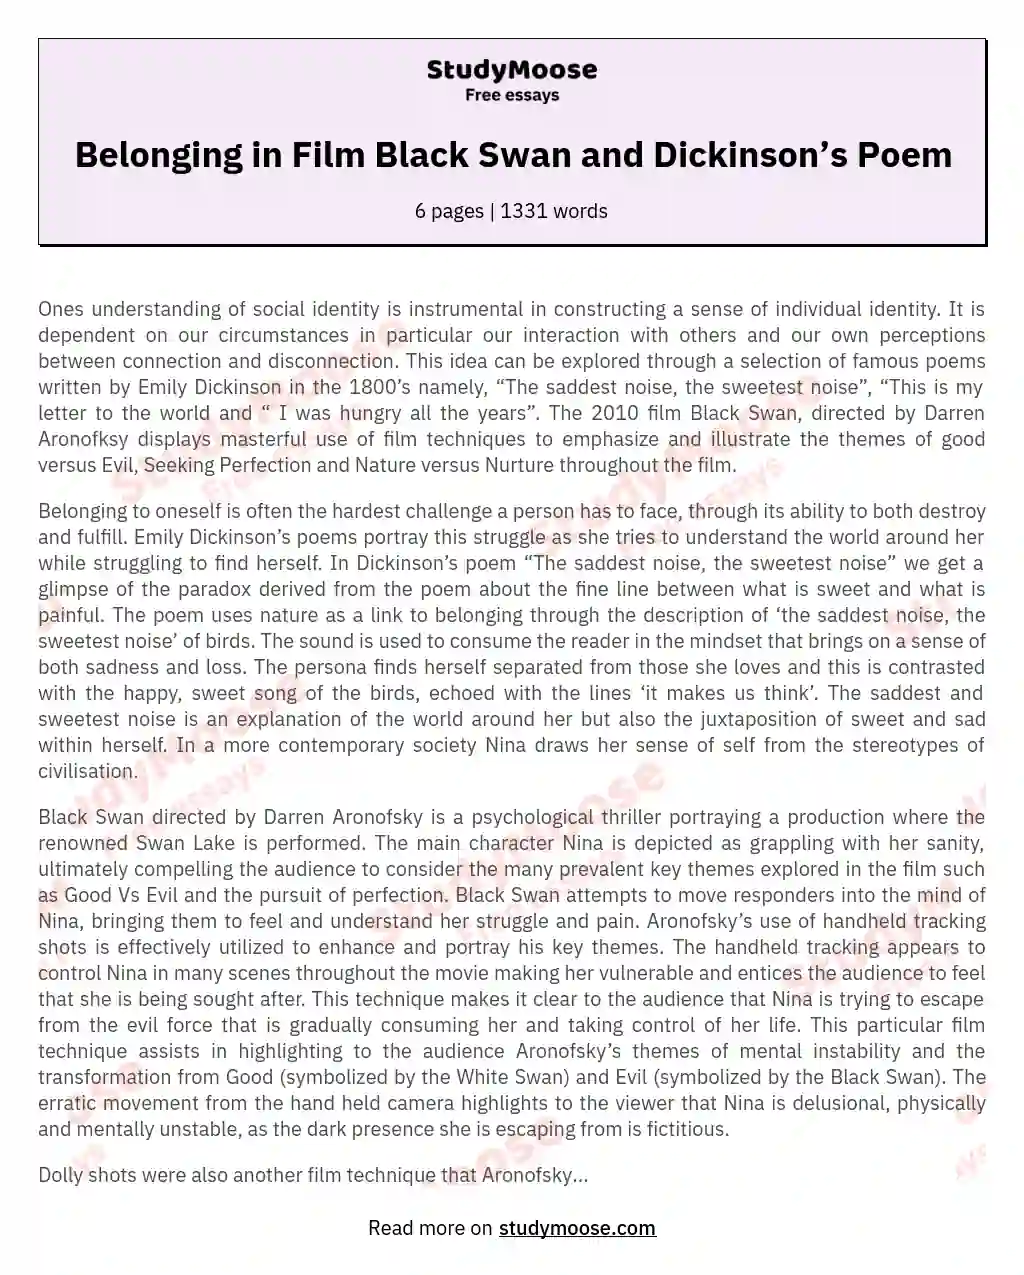 Belonging in Film Black Swan and Dickinson’s Poem